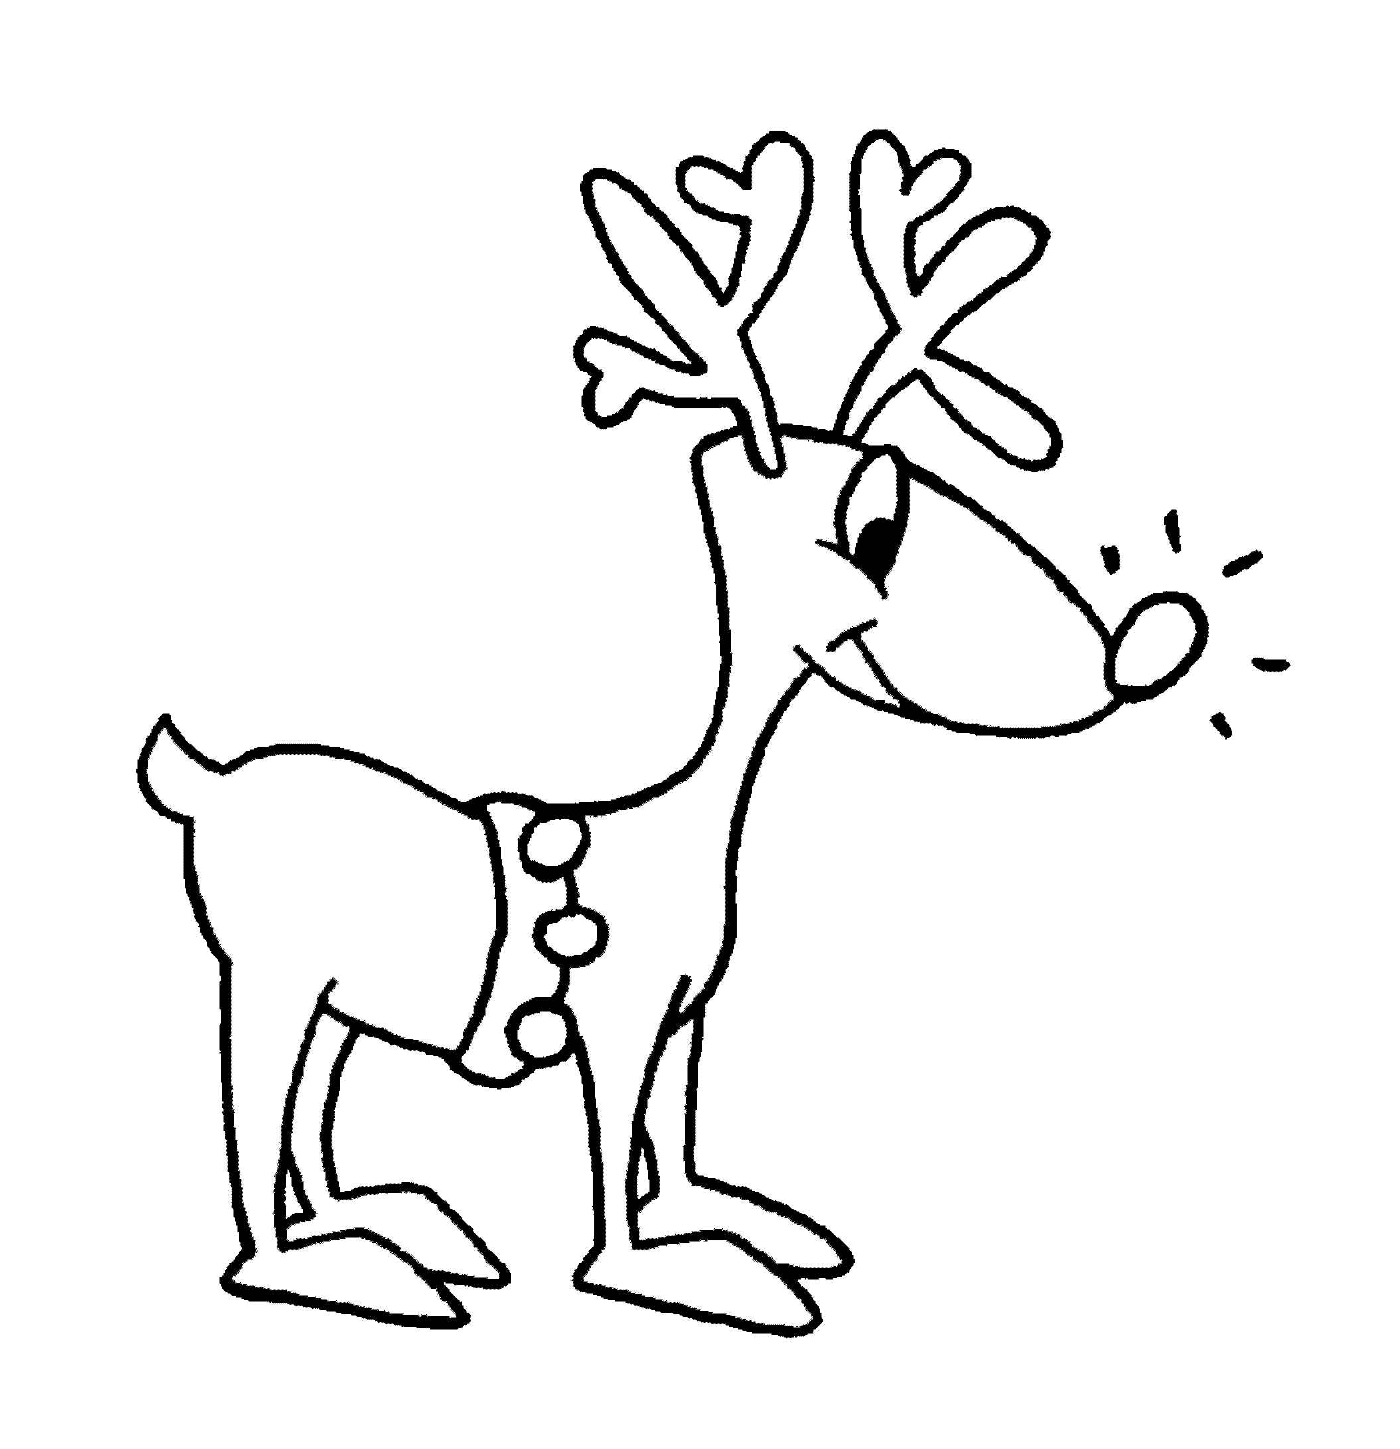  Navidad sencilla con renos 